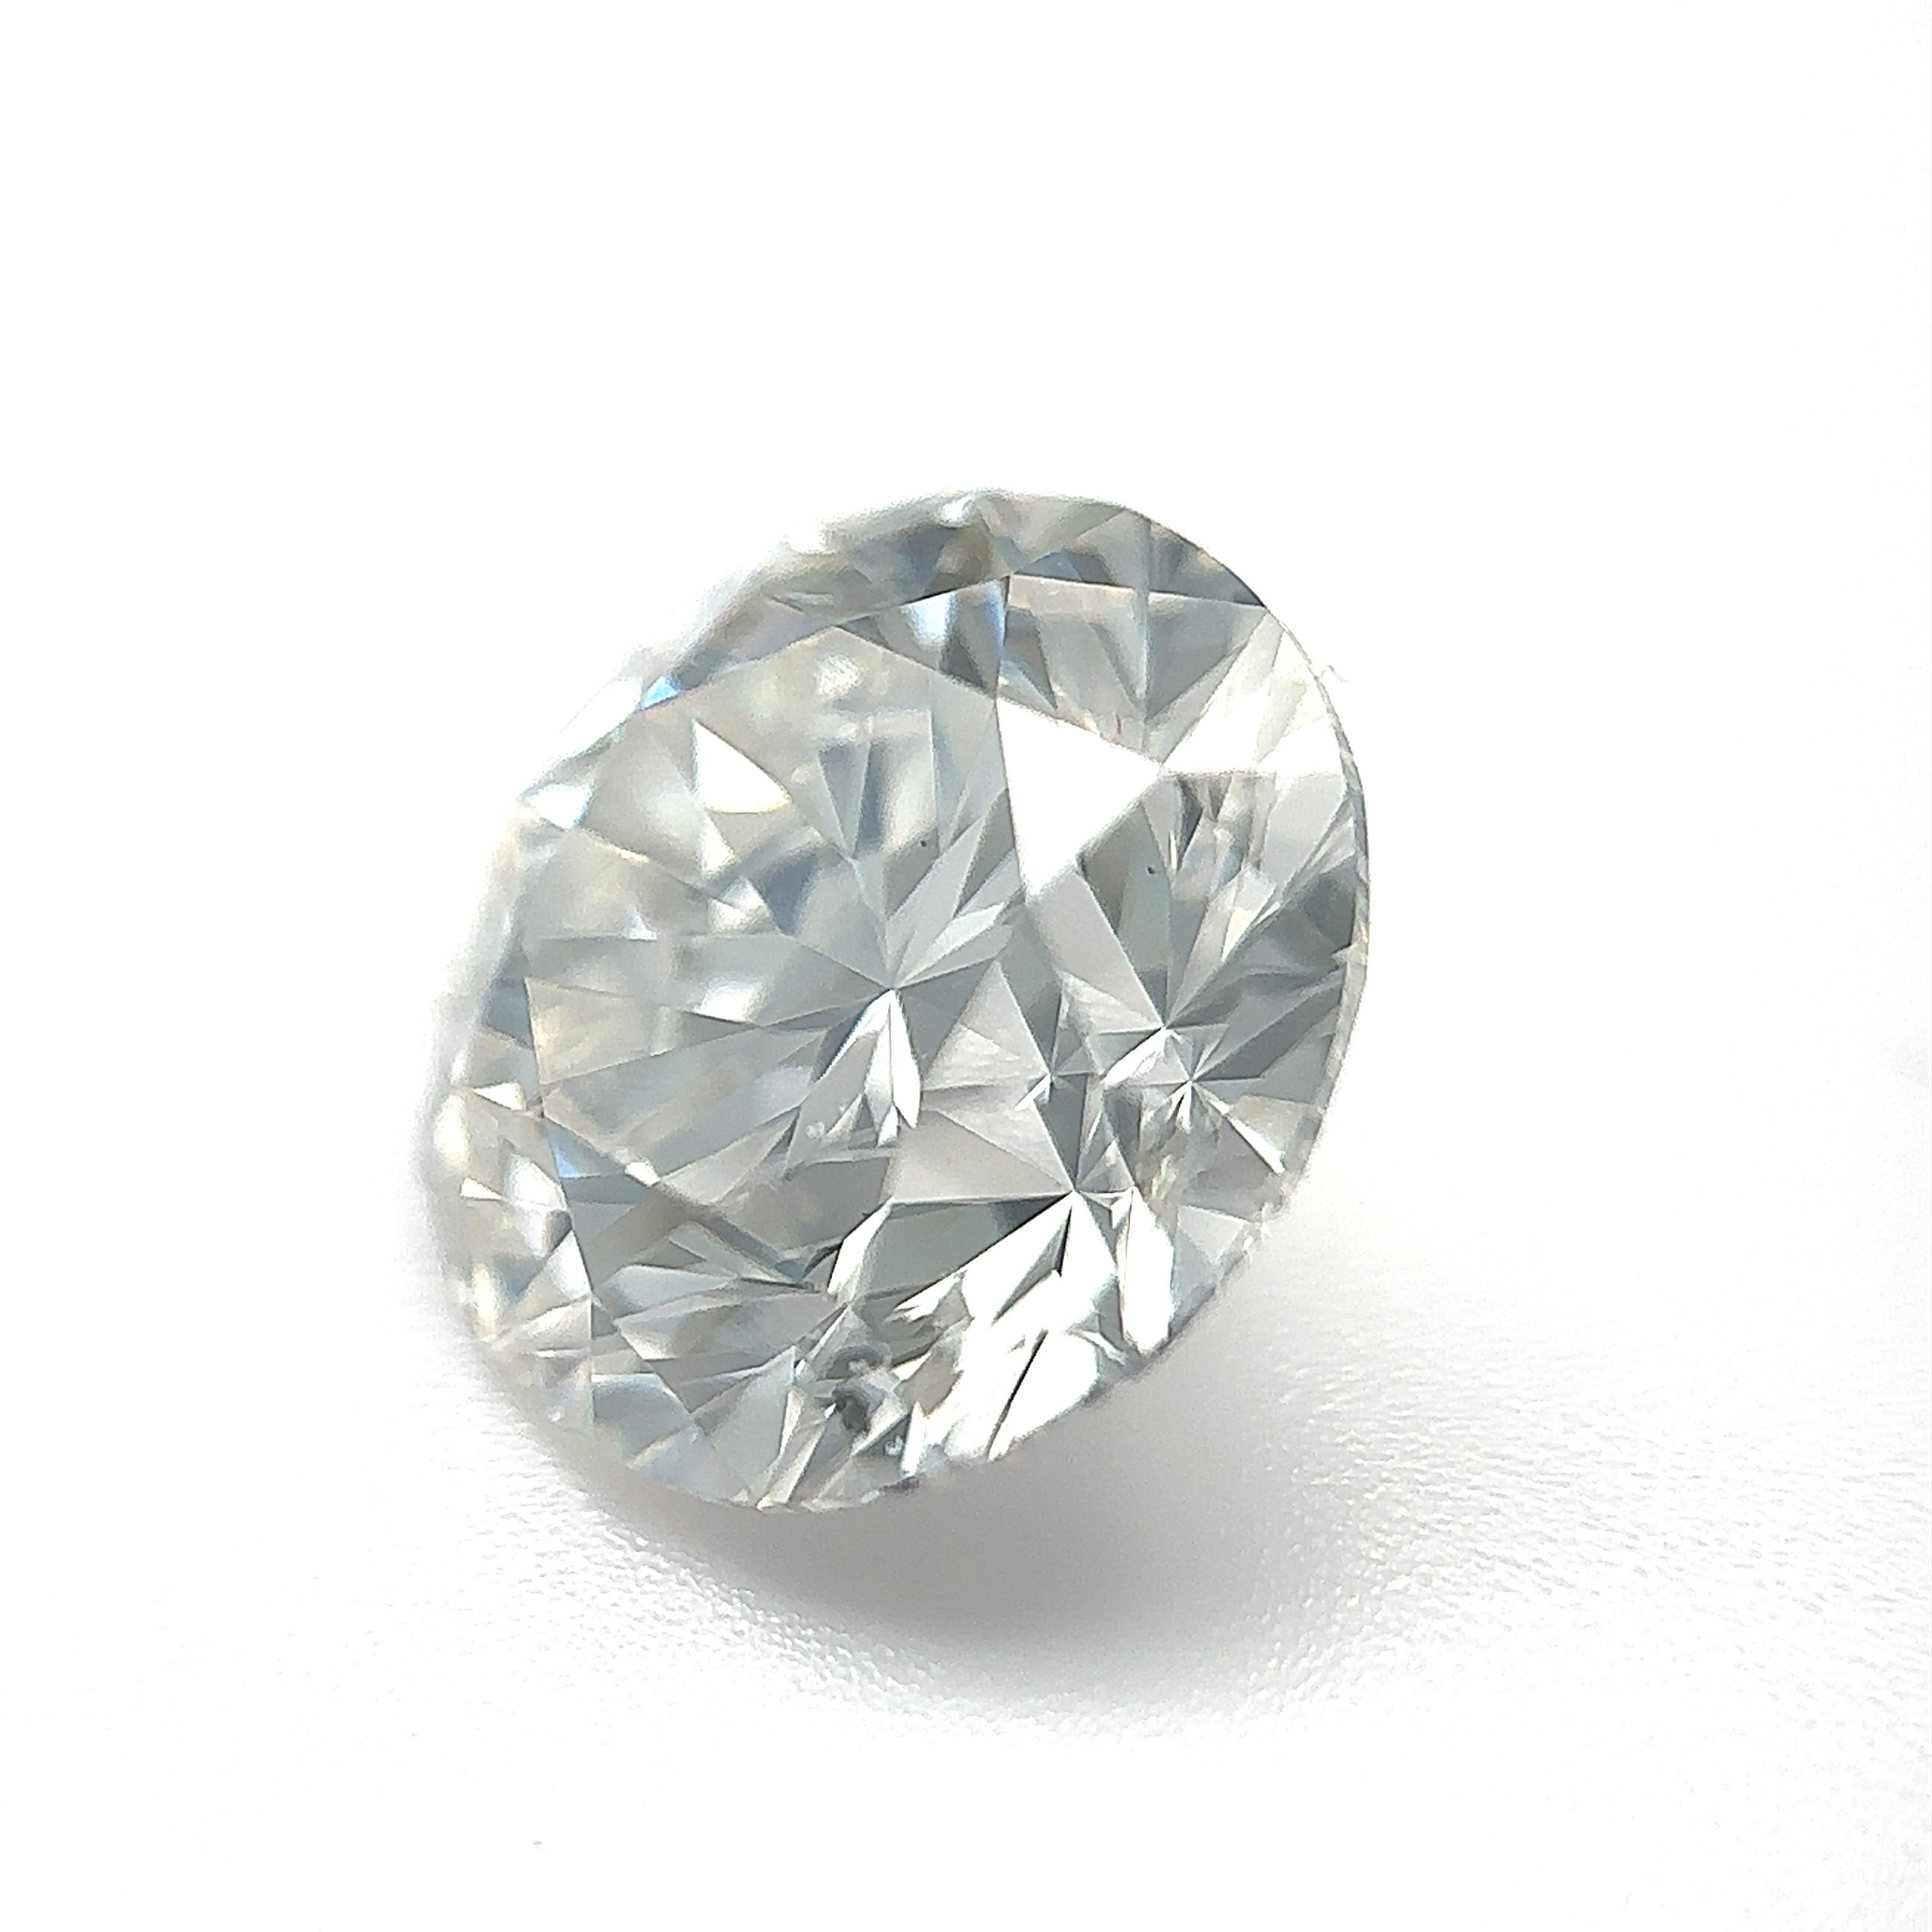 GIA-zertifizierter 3,24 Karat runder Brillant-Naturdiamant Lose Stein (Anpassungsoption)

Farbe: H
Klarheit: SI2 

Ideal für Verlobungsringe, Eheringe, Diamant-Halsketten und Diamant-Ohrringe. Setzen Sie sich mit uns in Verbindung, um Ihren Schmuck